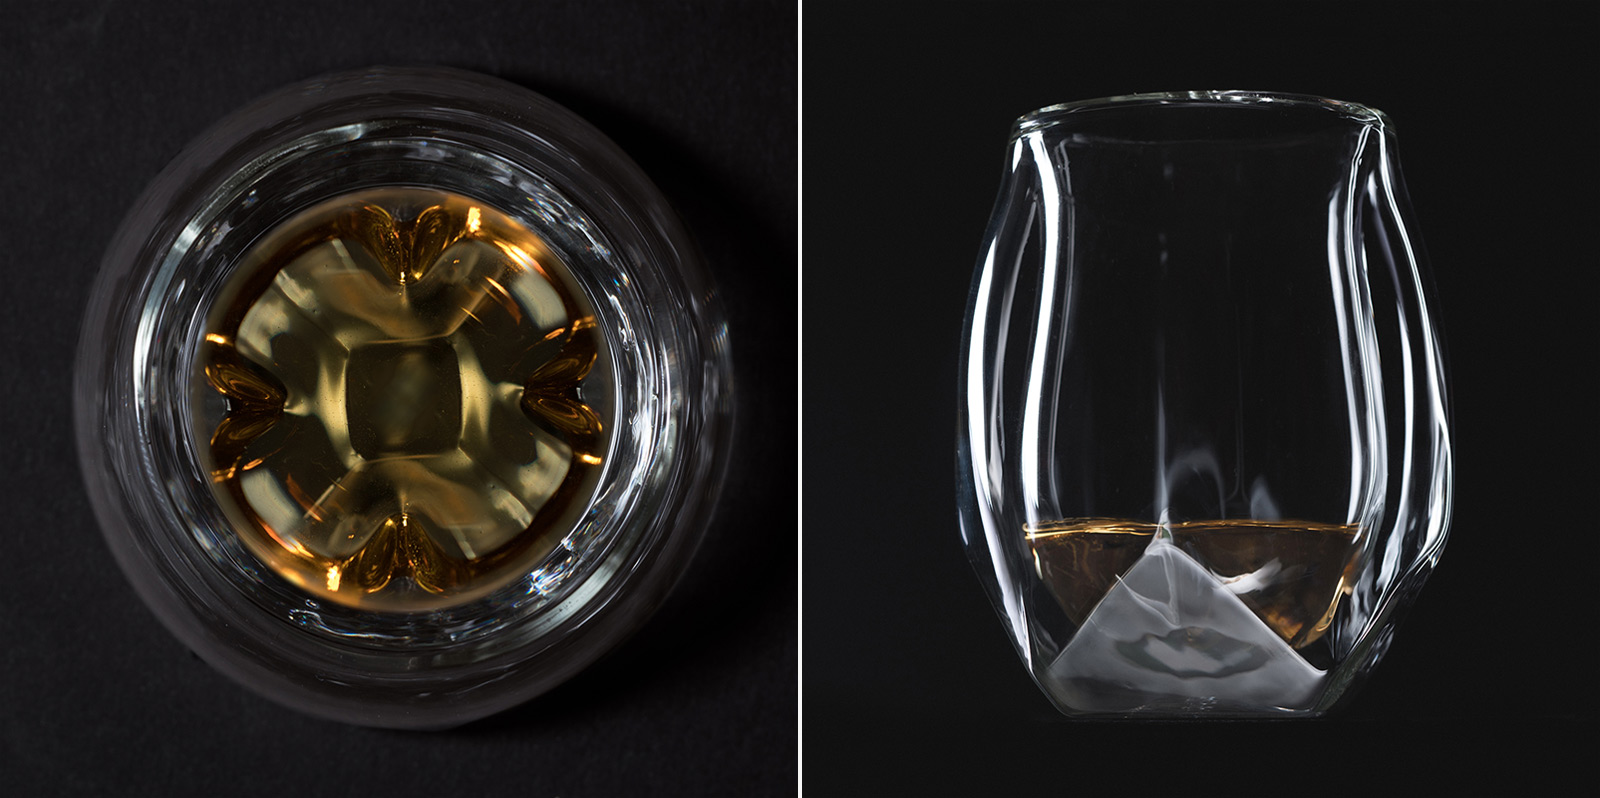 https://150102931.v2.pressablecdn.com/wp-content/uploads/2015/10/Norlan-Whisky-Glass-03.jpg